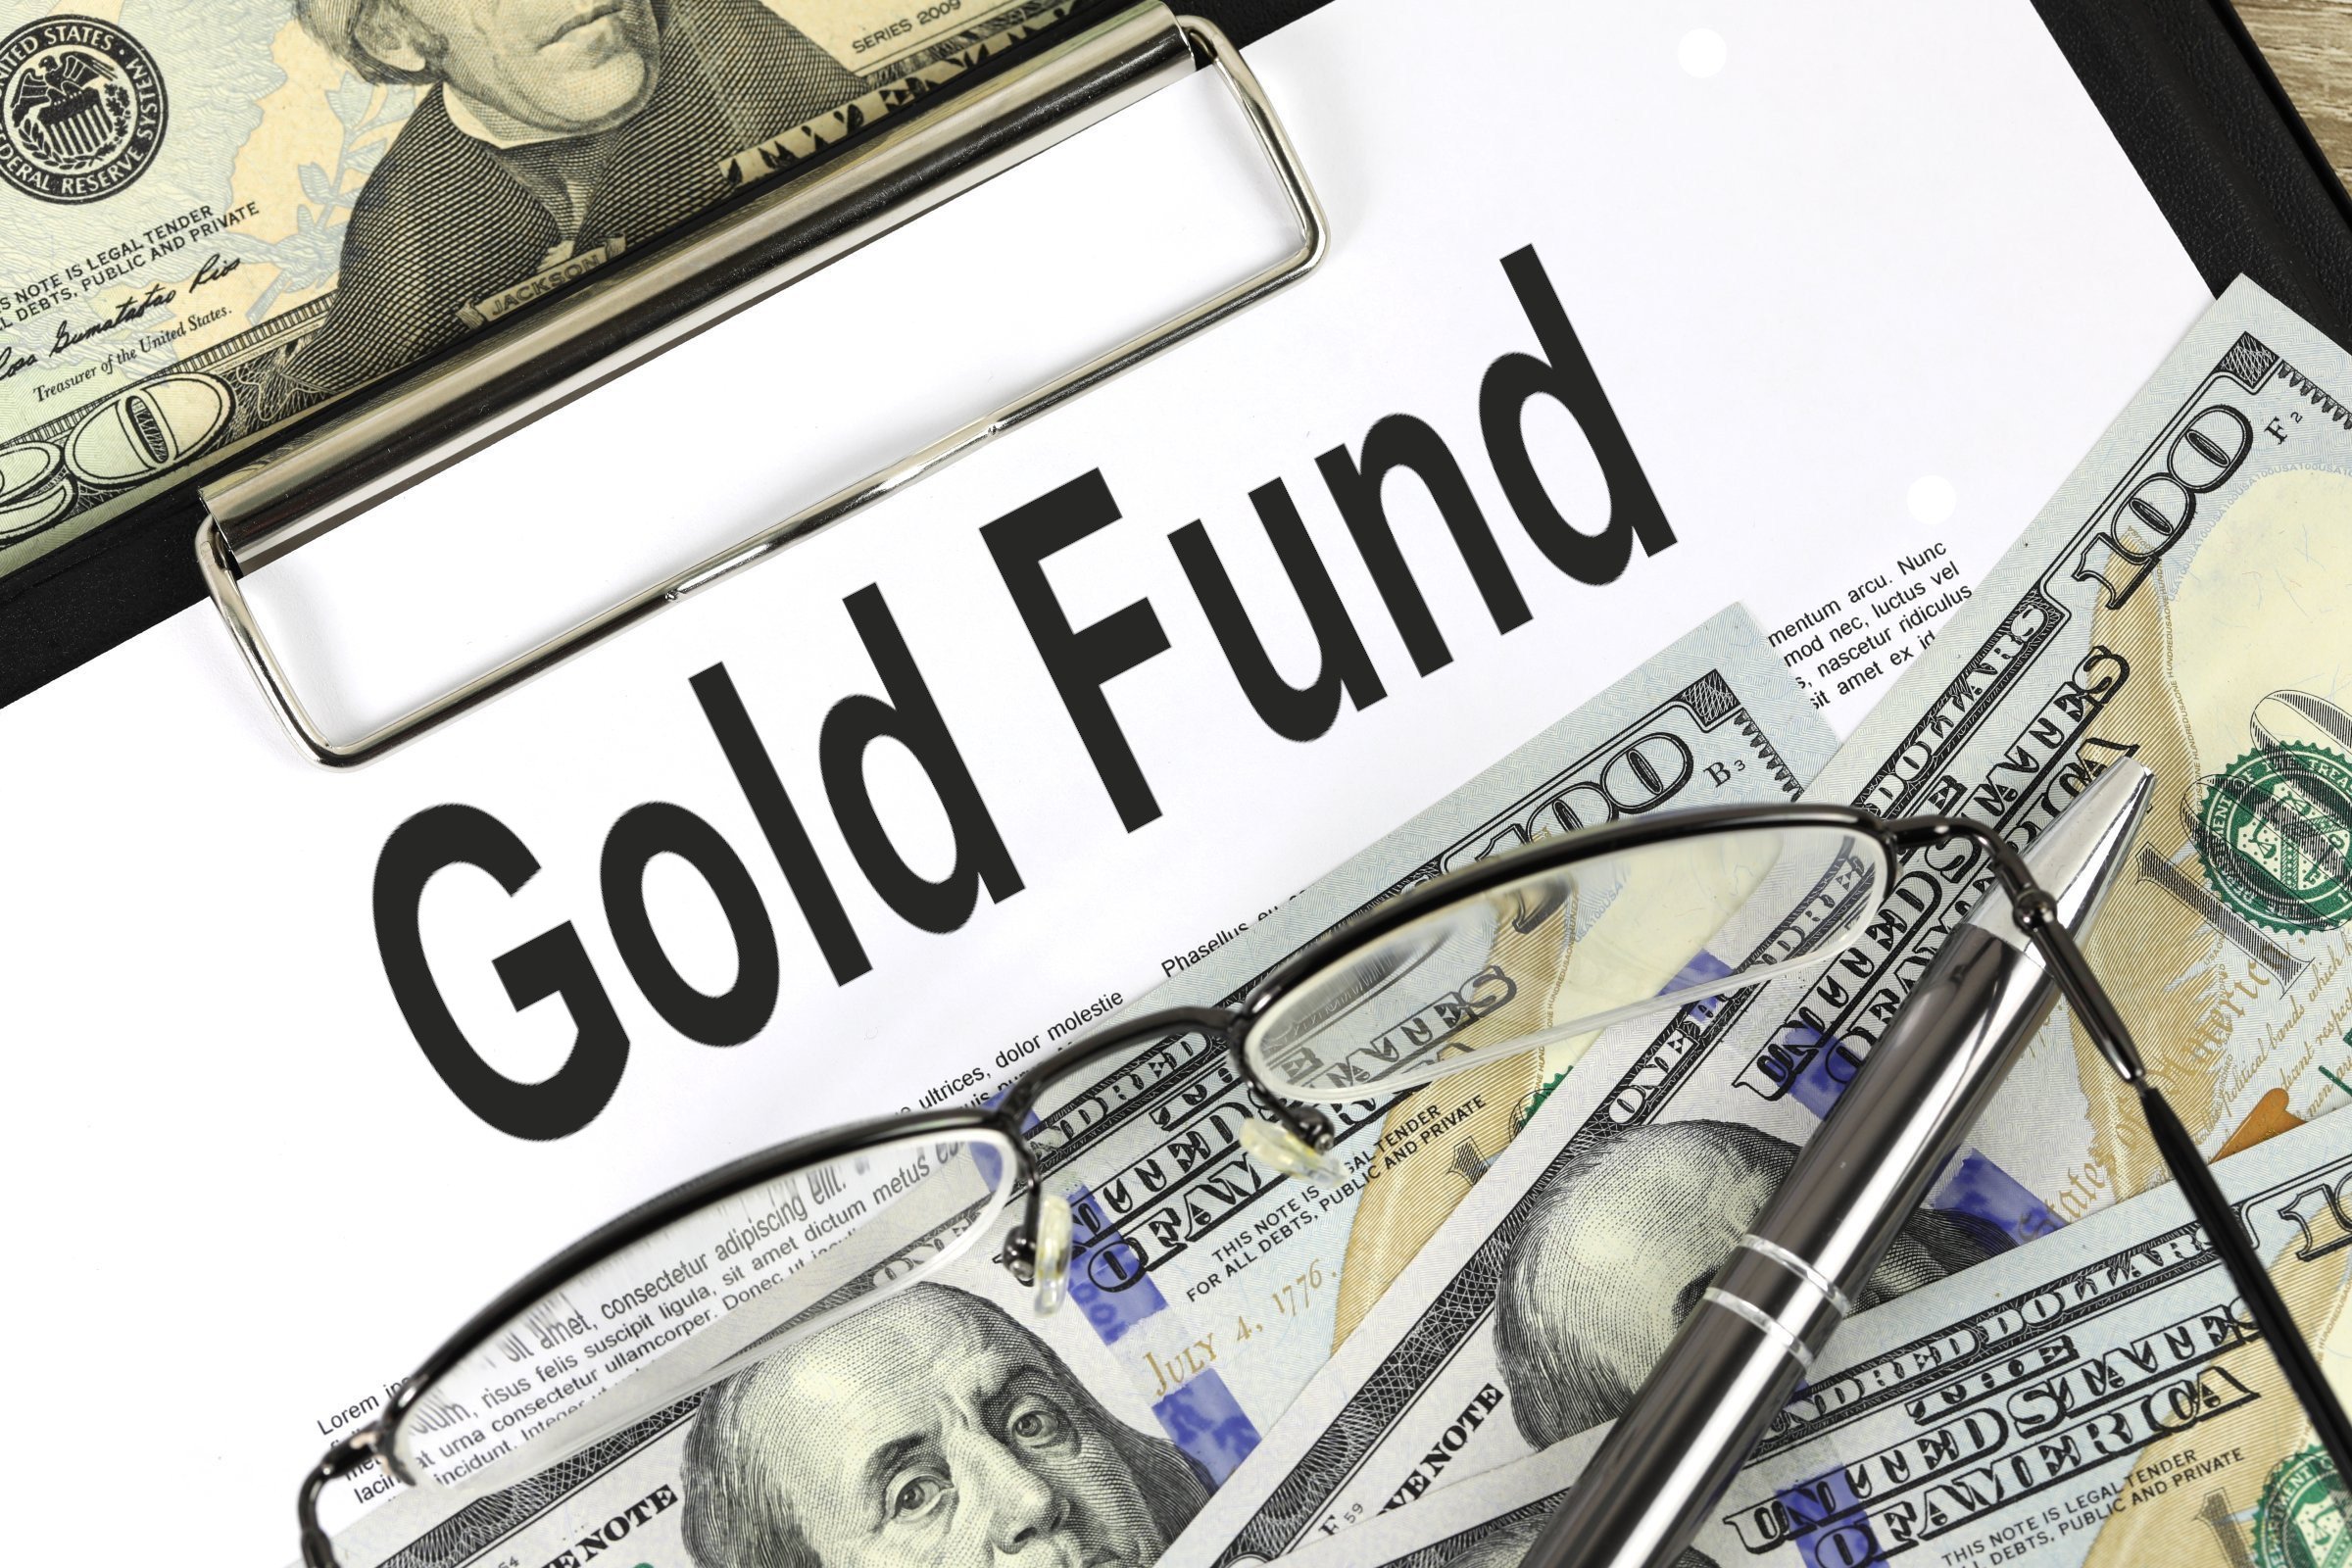 gold fund